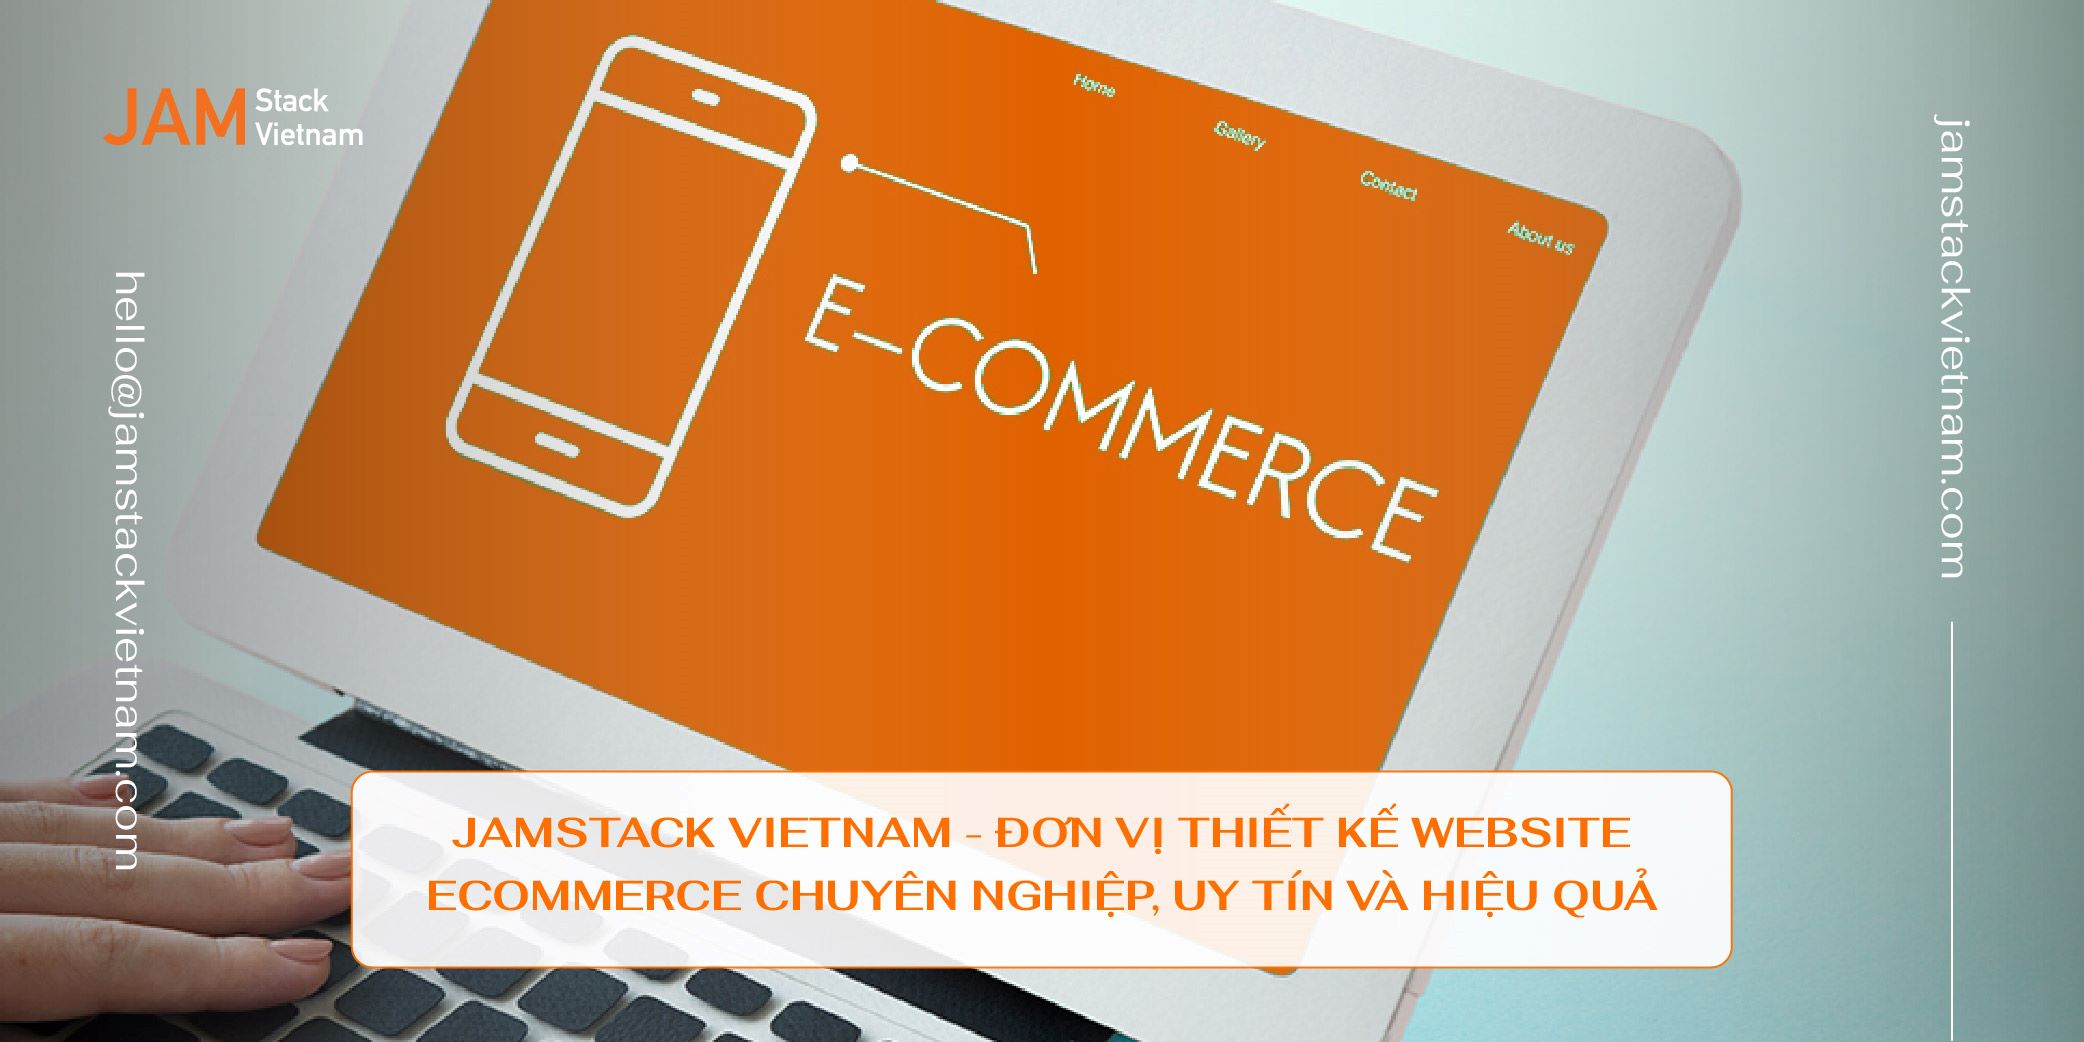 JAMstack Vietnam - Đơn vị thiết kế website Ecom chuyên nghiệp, uy tín và hiệu quả